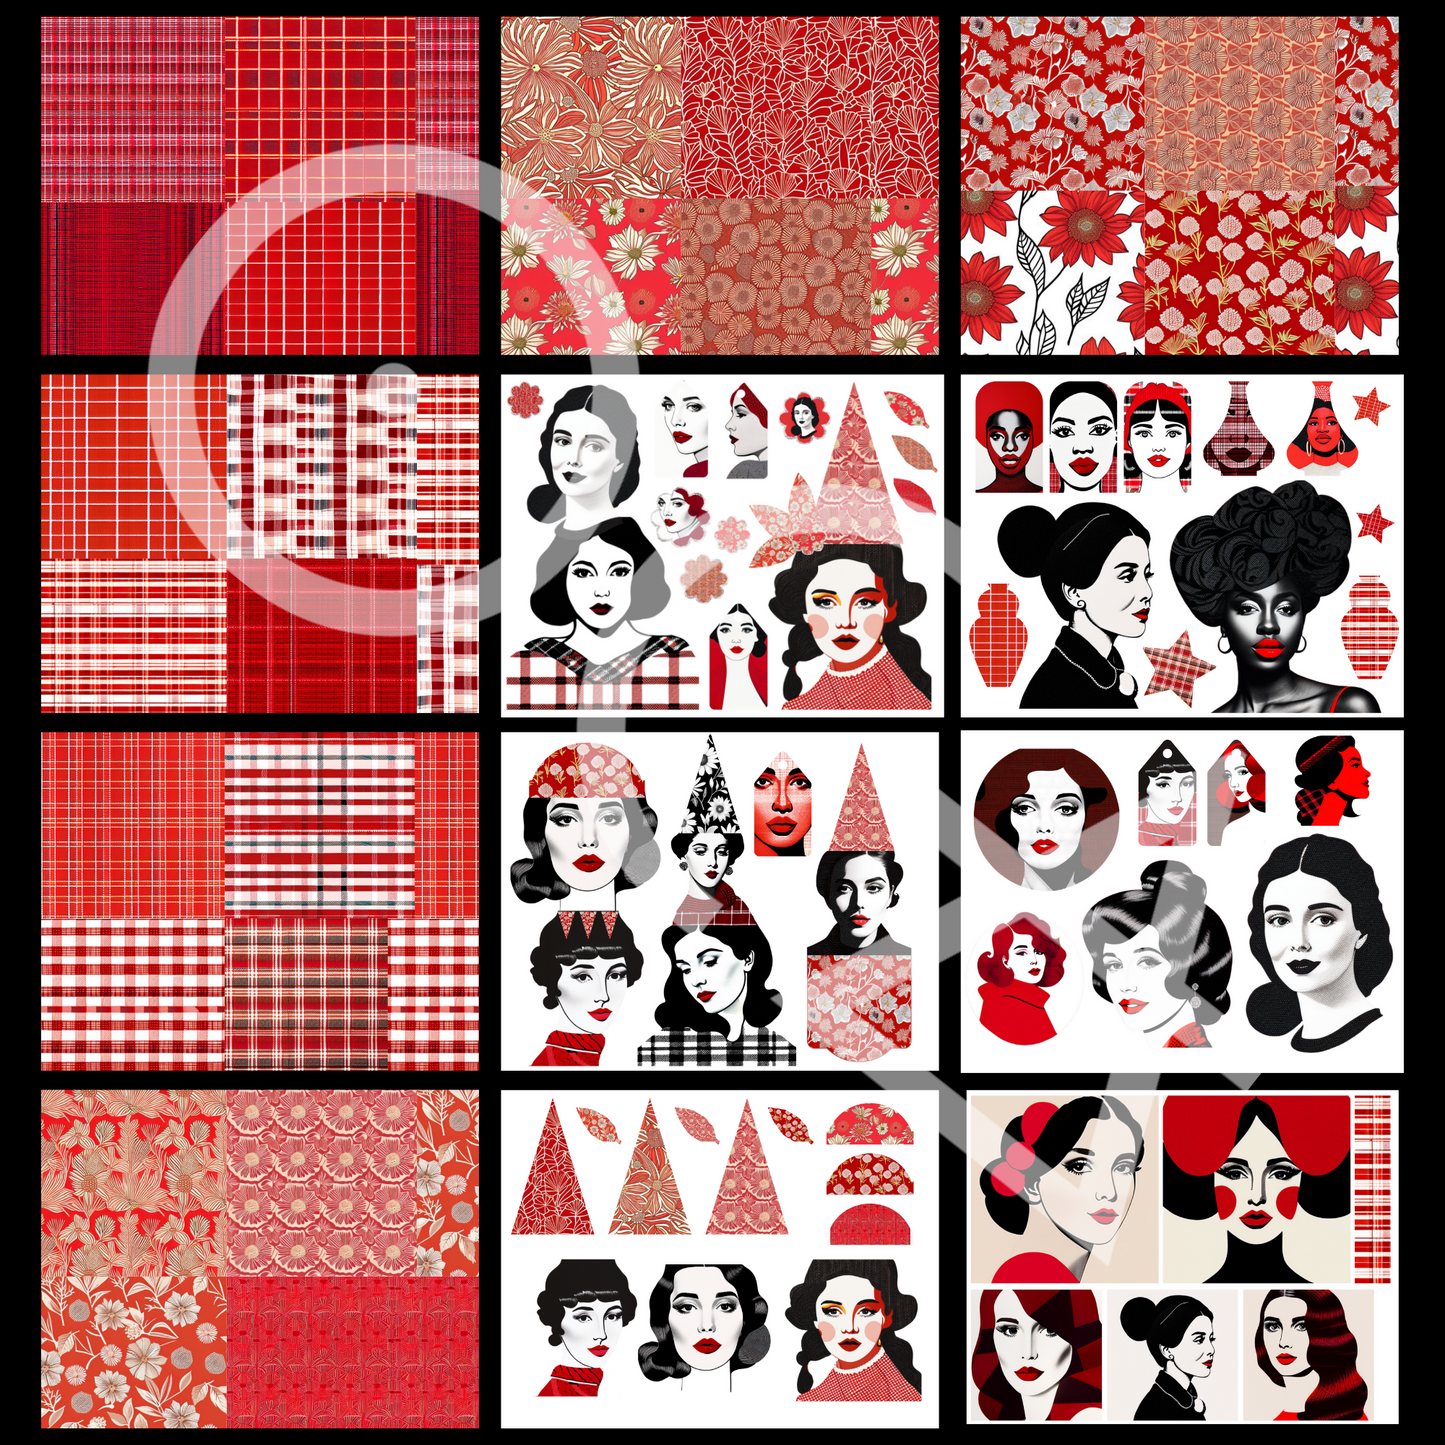 Lady in Red | Sip&Snip Collage Kit (Digital/Printable)